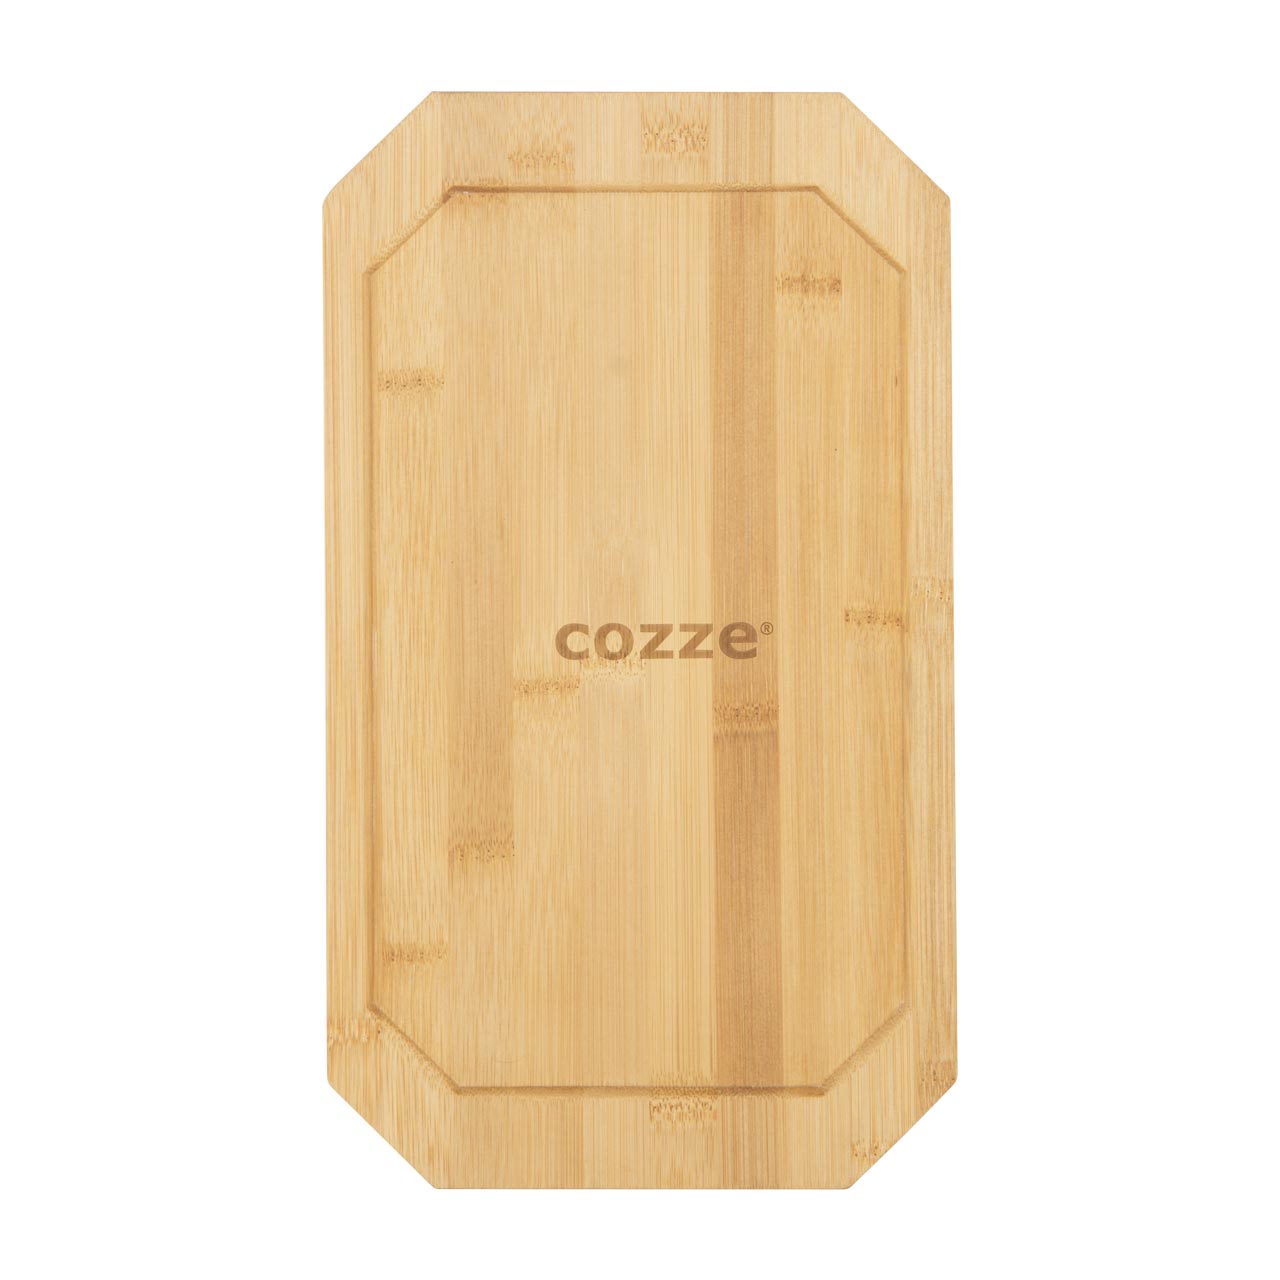 COZZE Gusseisenpfanne mit Holztablett, klein